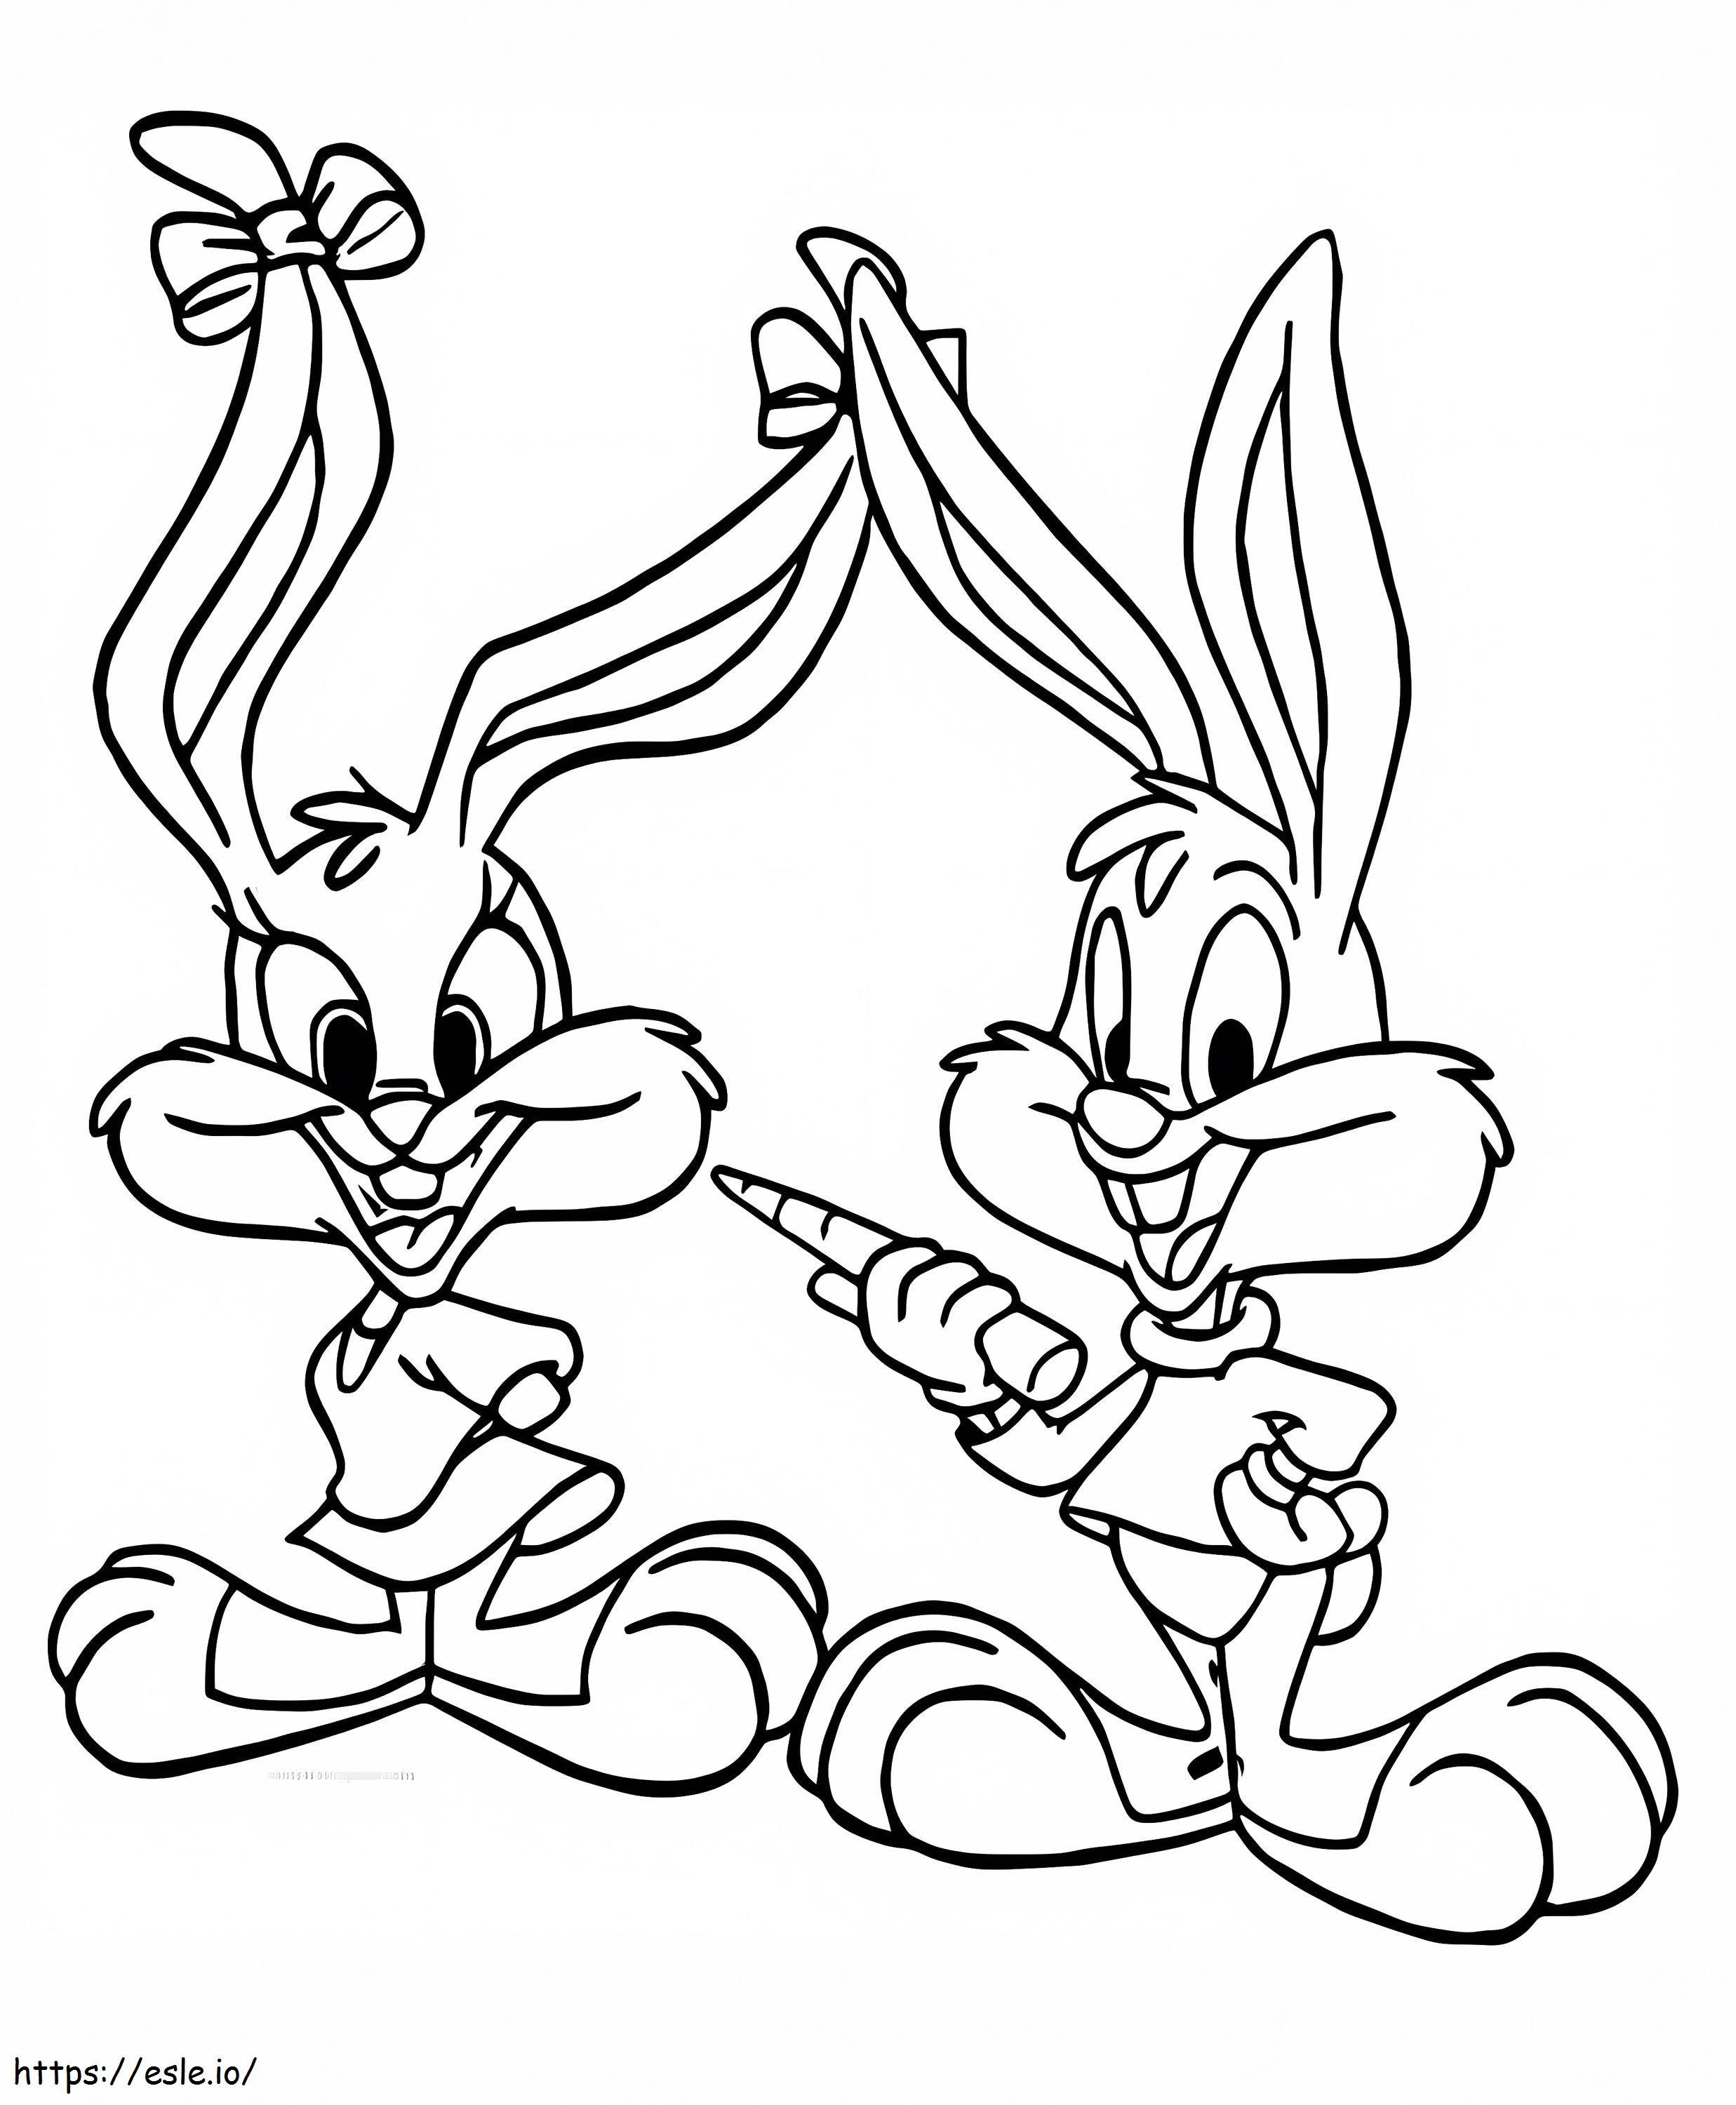 Babs Bunny und Buster Bunny ausmalbilder